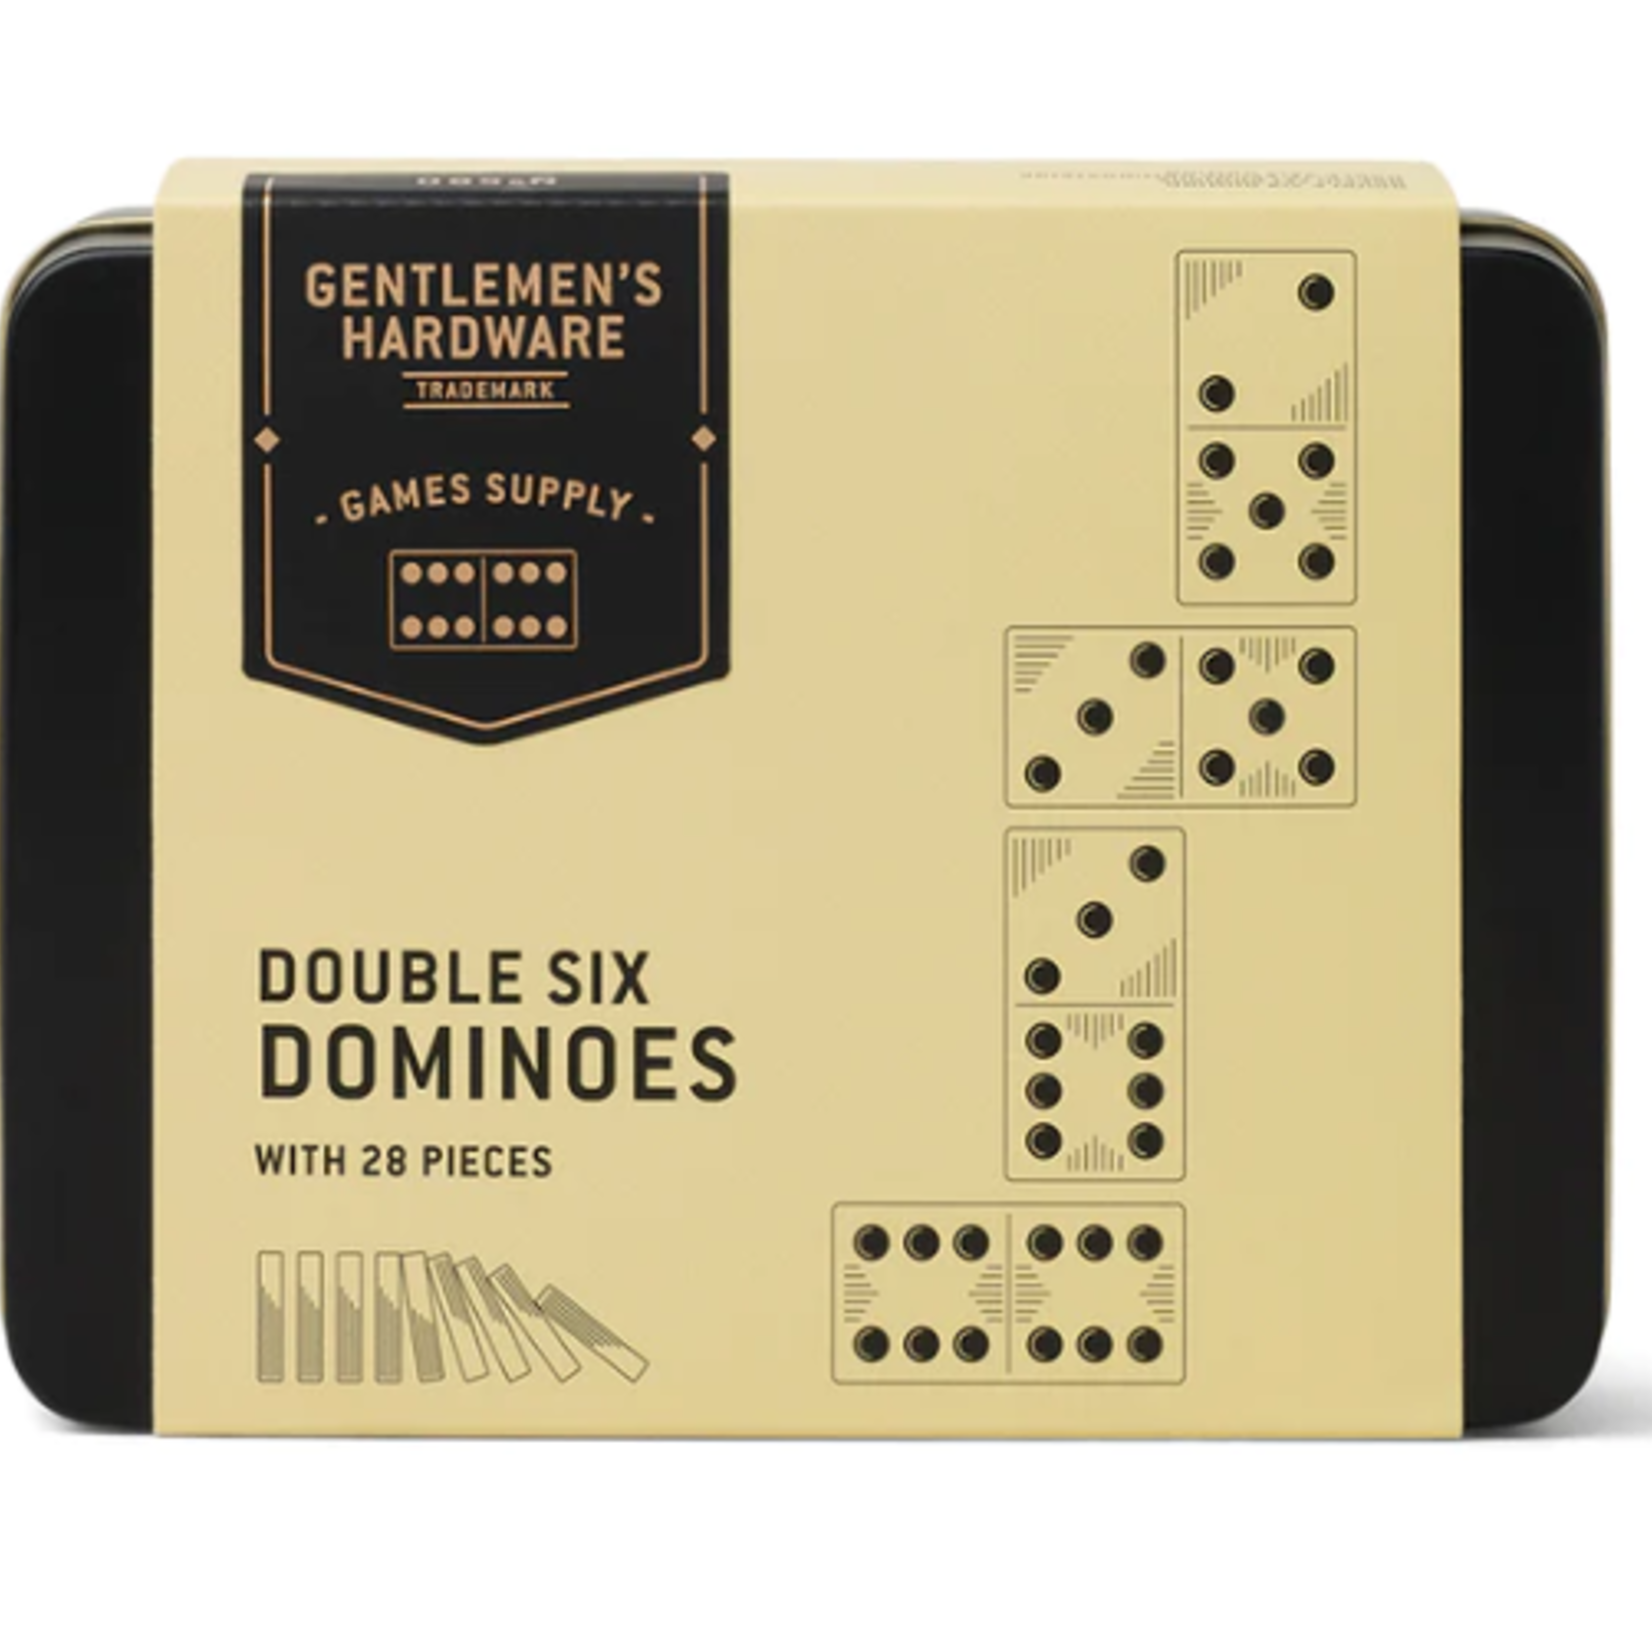 Gentlemen's Hardware Double Six Dominos